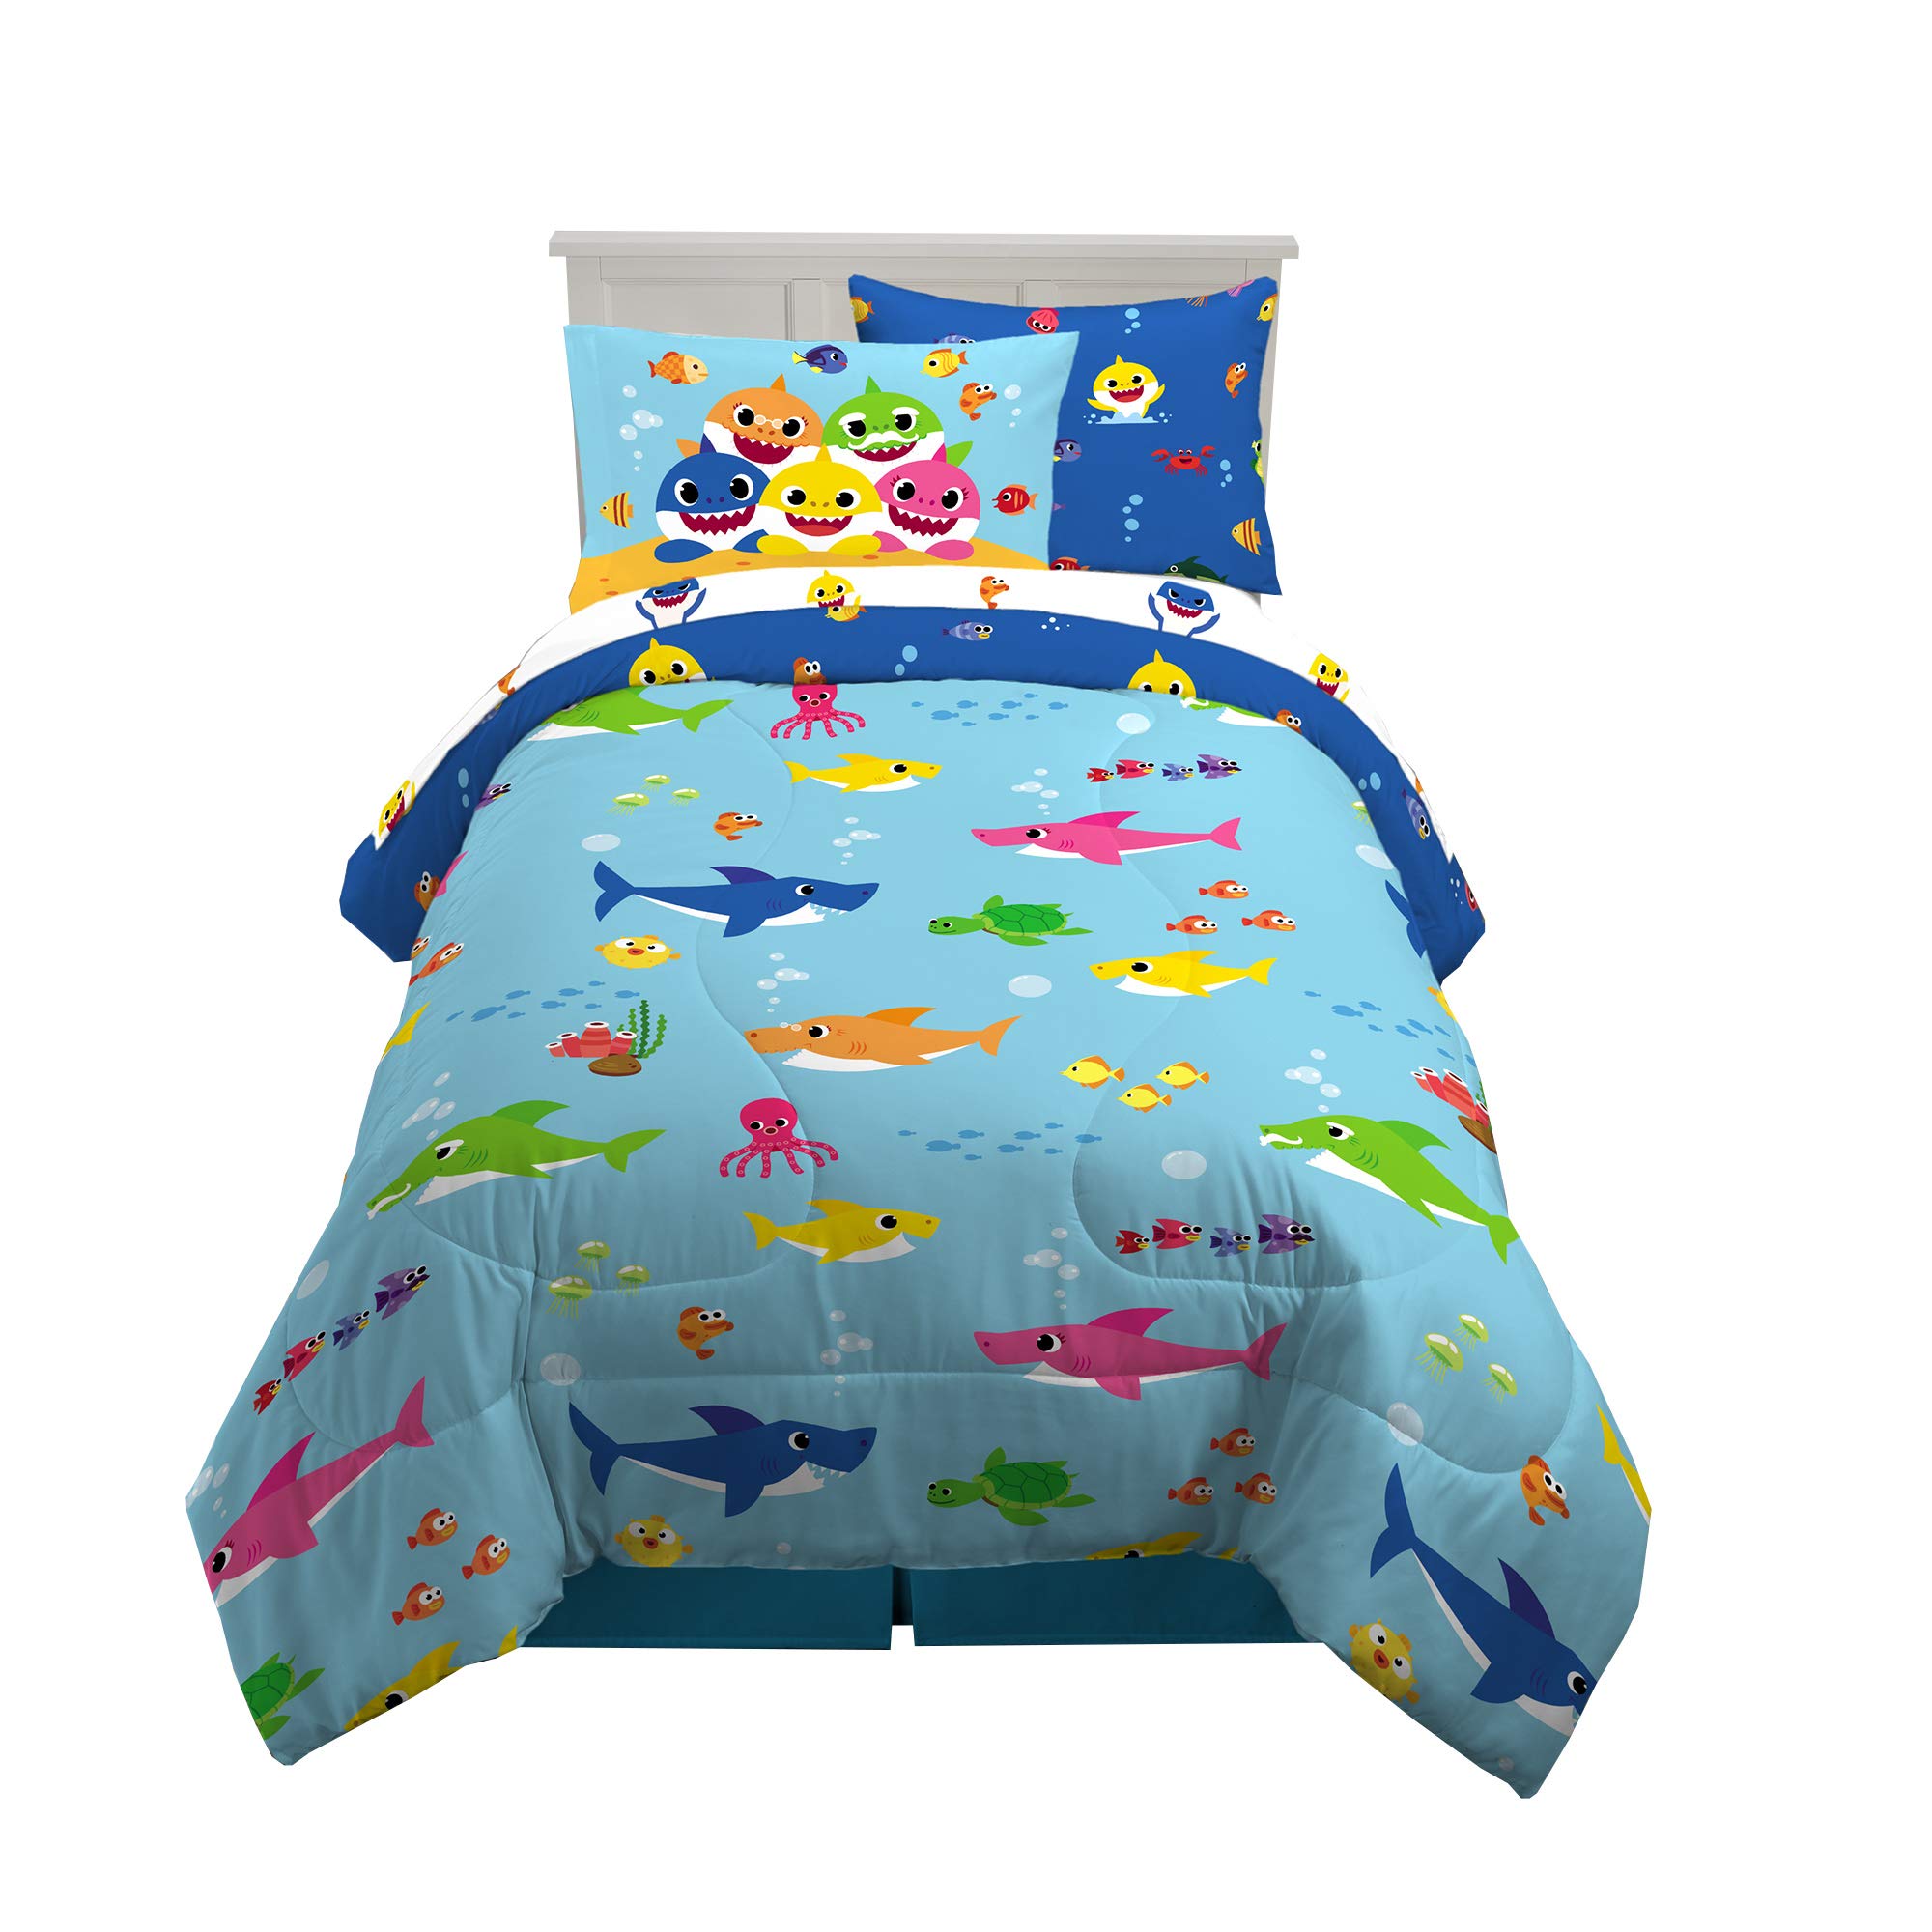 Franco Kids Bedding Super Soft Comforter and Sheet Set with Sham